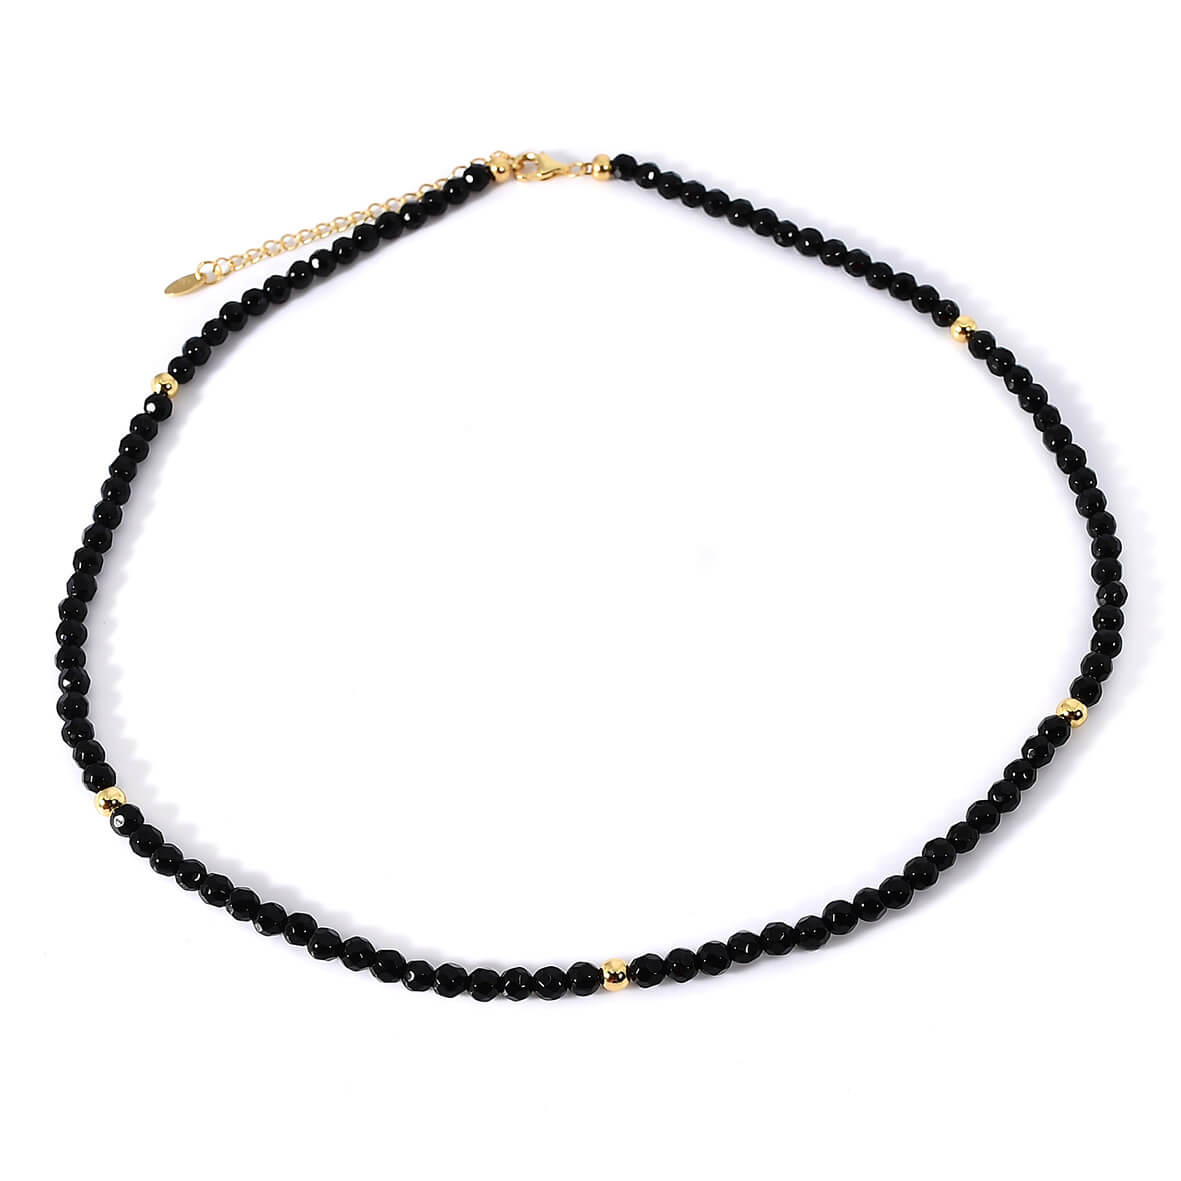 Damen Halskette mit geschliffenen Onyx Steinen und 925 Sterling Silber vergoldet. Die edle schwarze Frauen Halskette ist zeitlos und elegant.